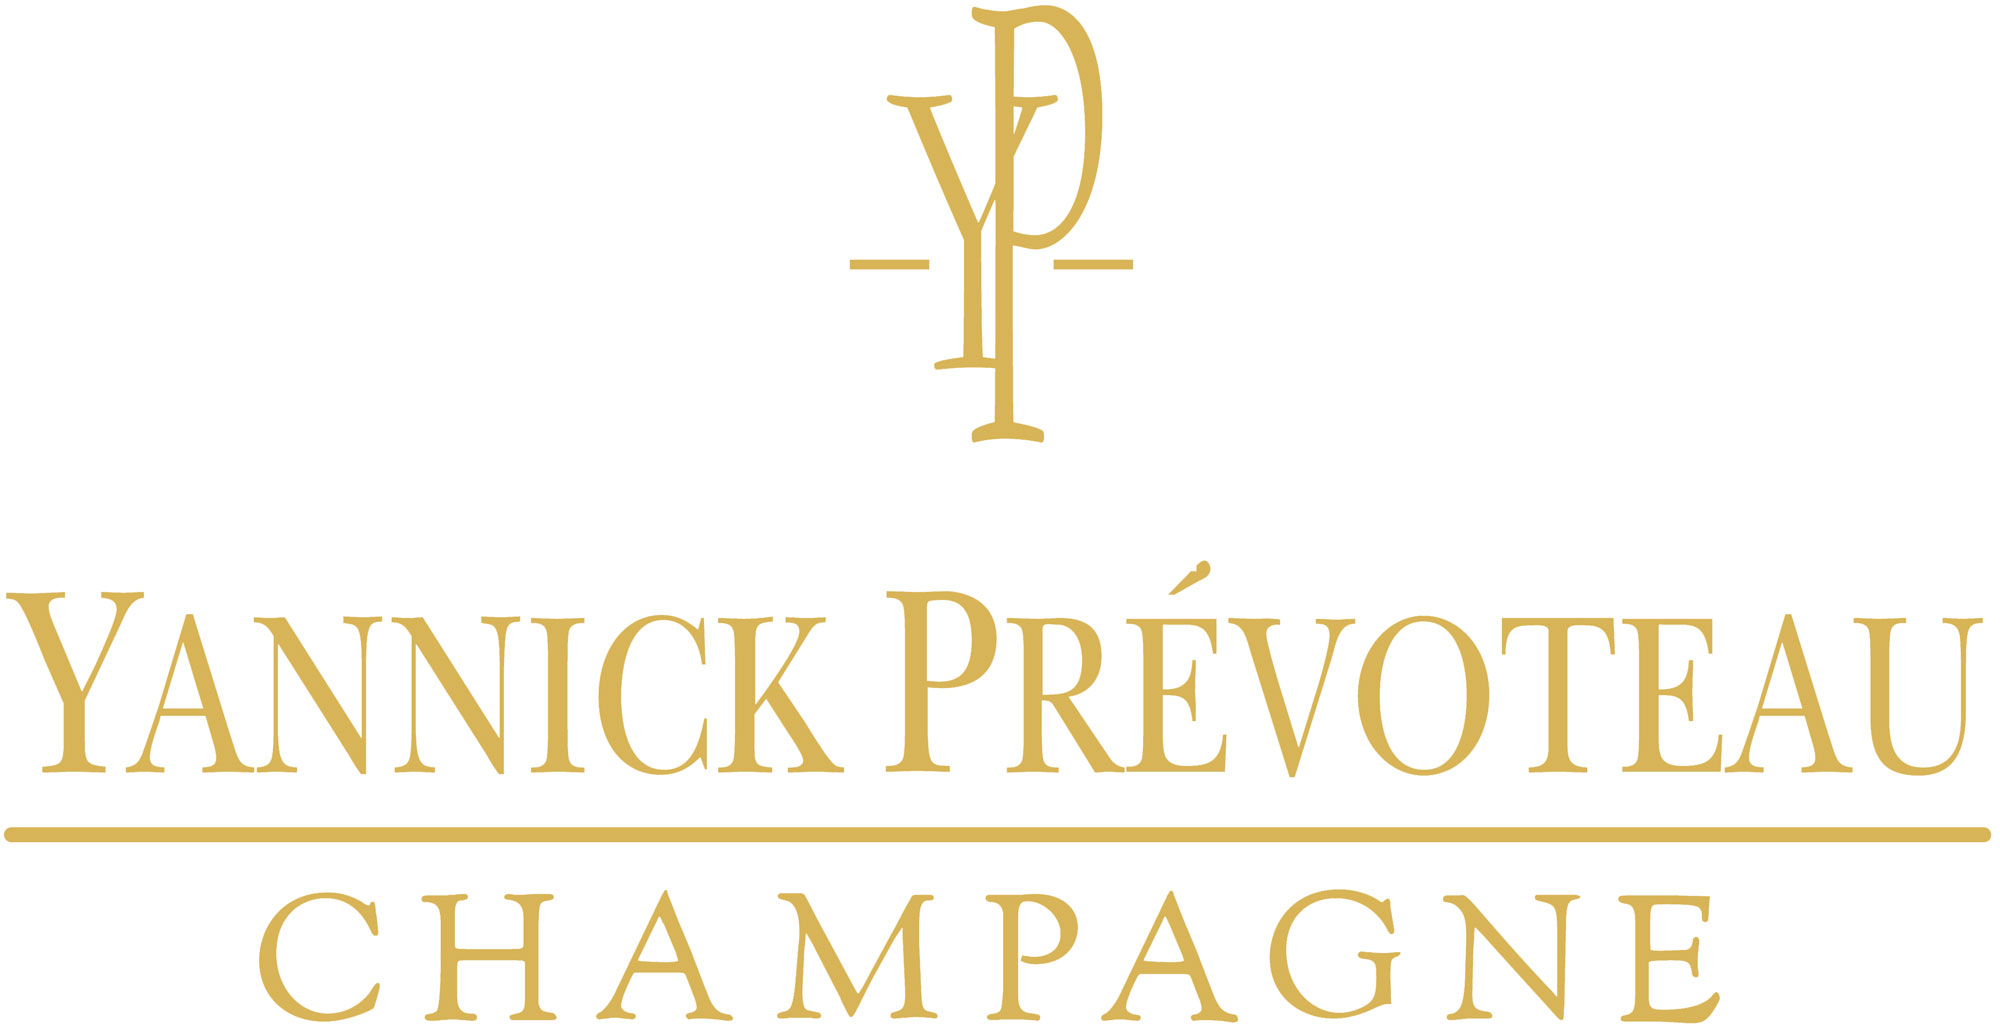 Champagne Yannick Prévoteau